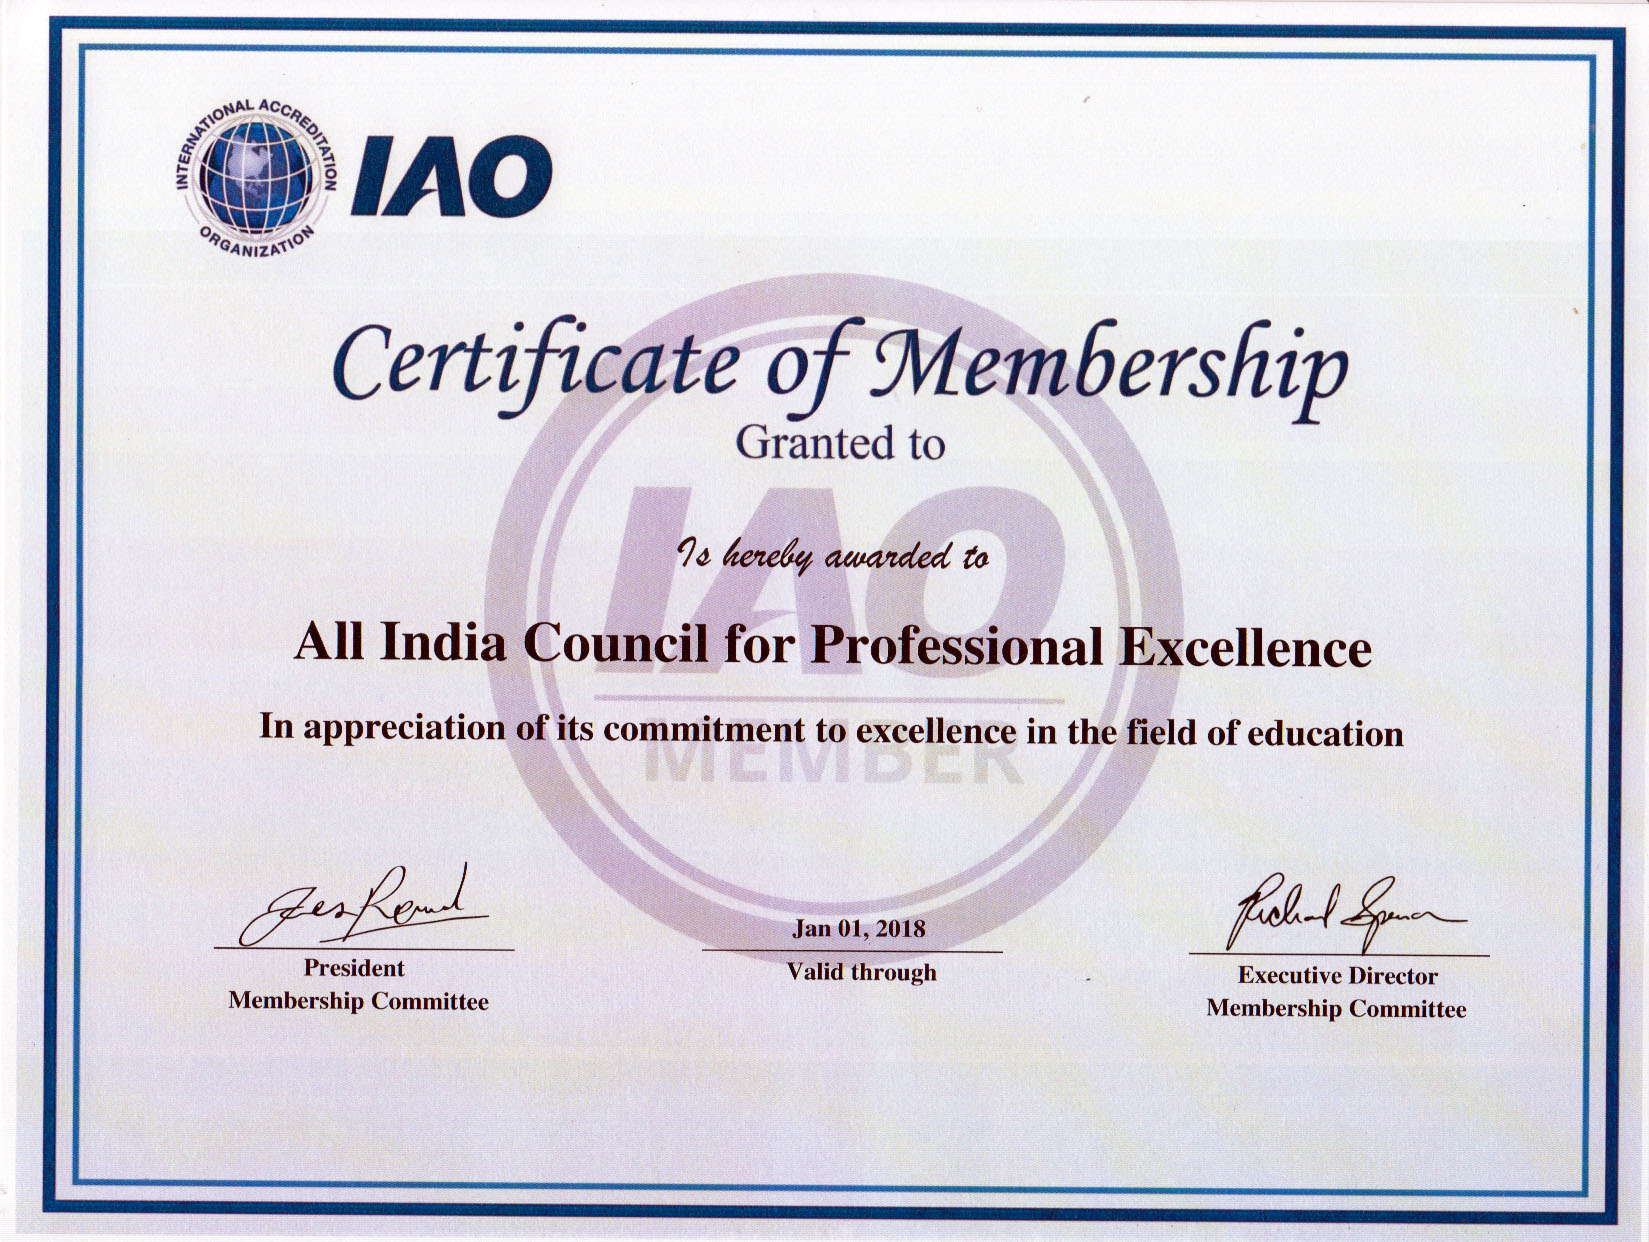 IAO (International Accreditation Organization) Certificate